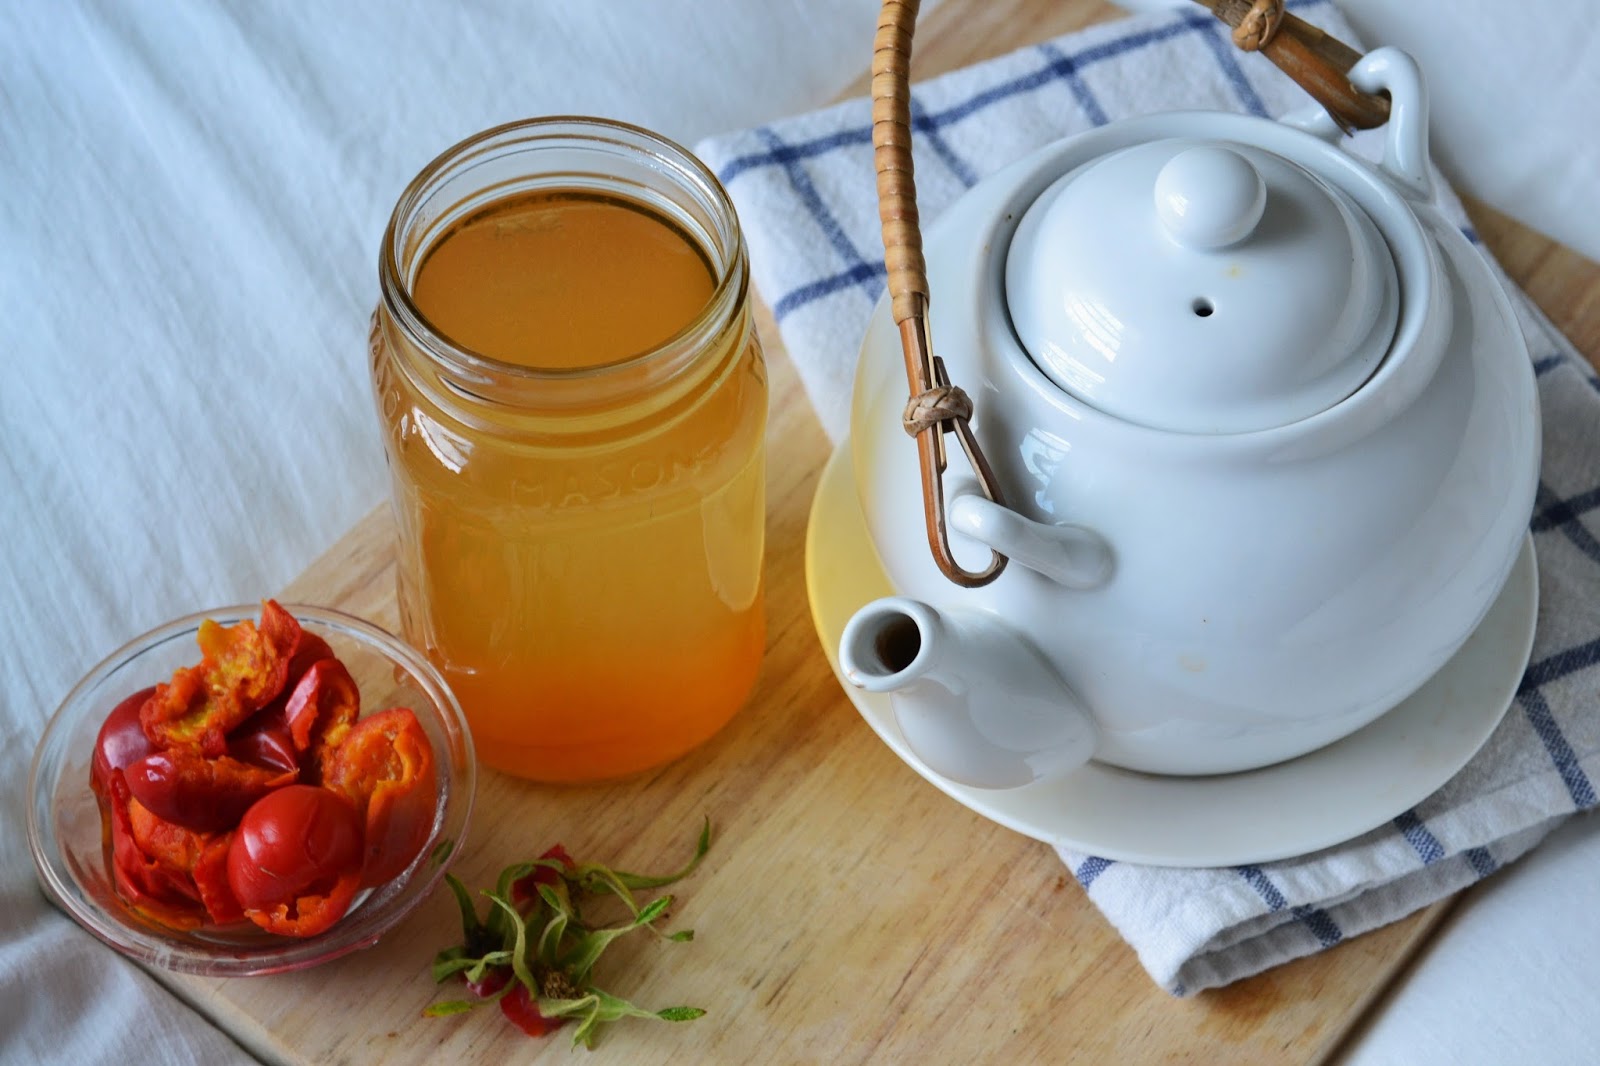 Приготовить чай из плодов шиповника достаточно просто